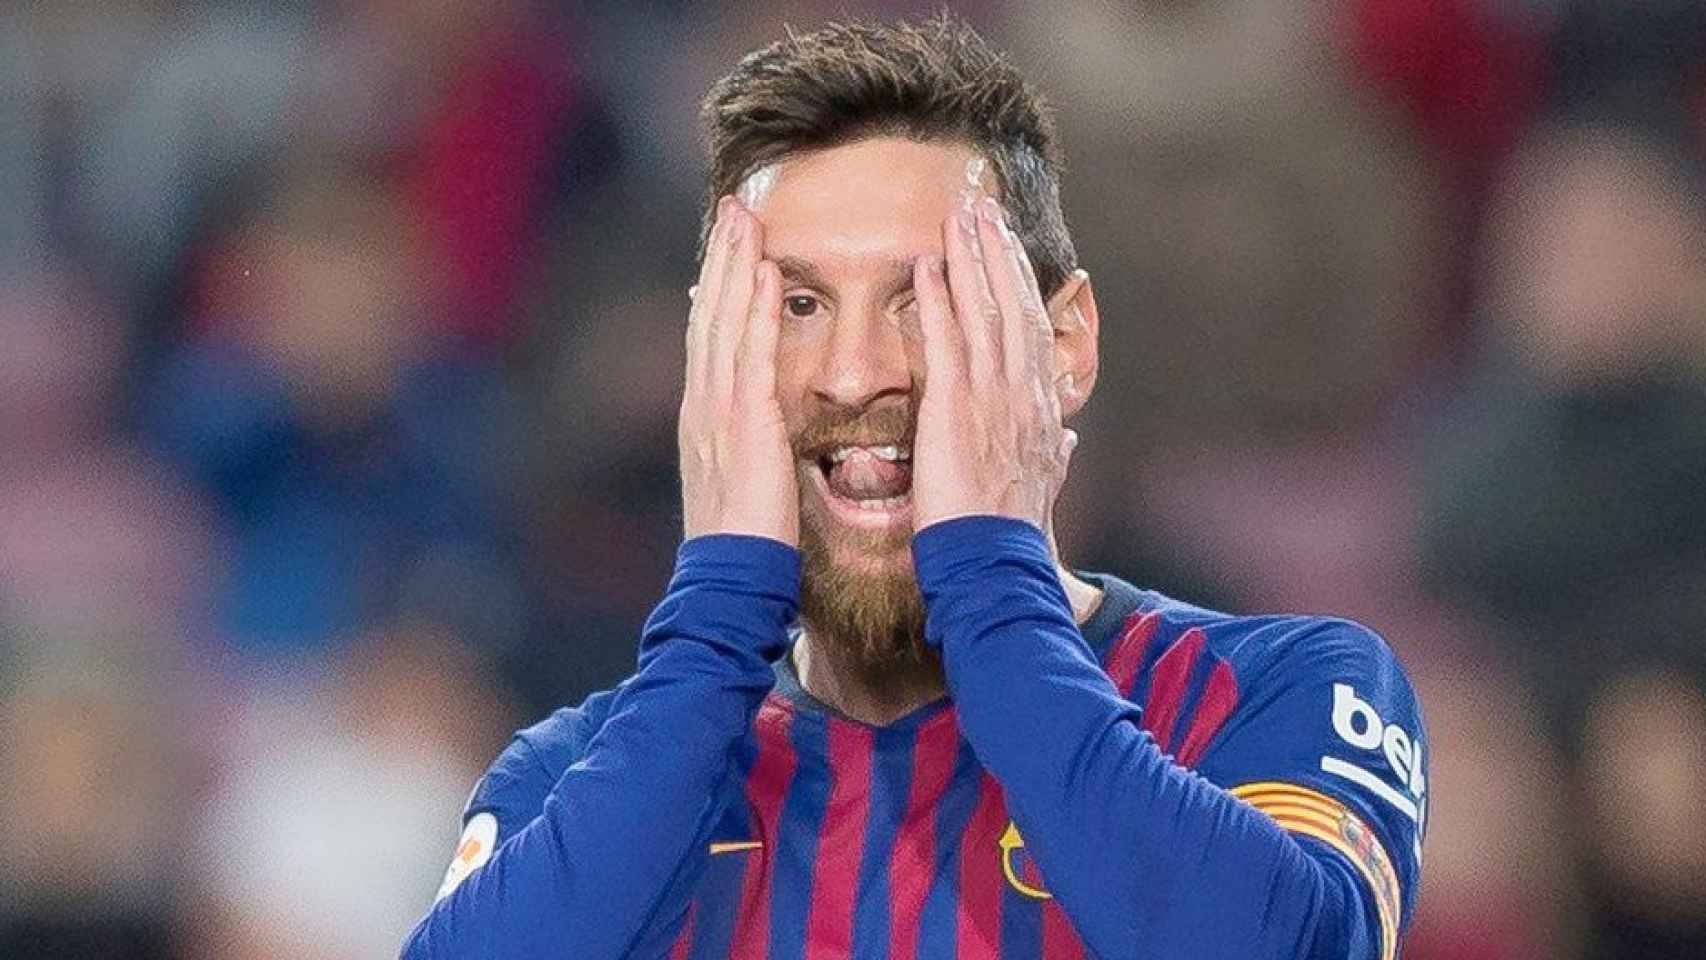 El delantero del FC Barcelona Leo Messi se toca la cara durante un partido en el Camp Nou / EFE